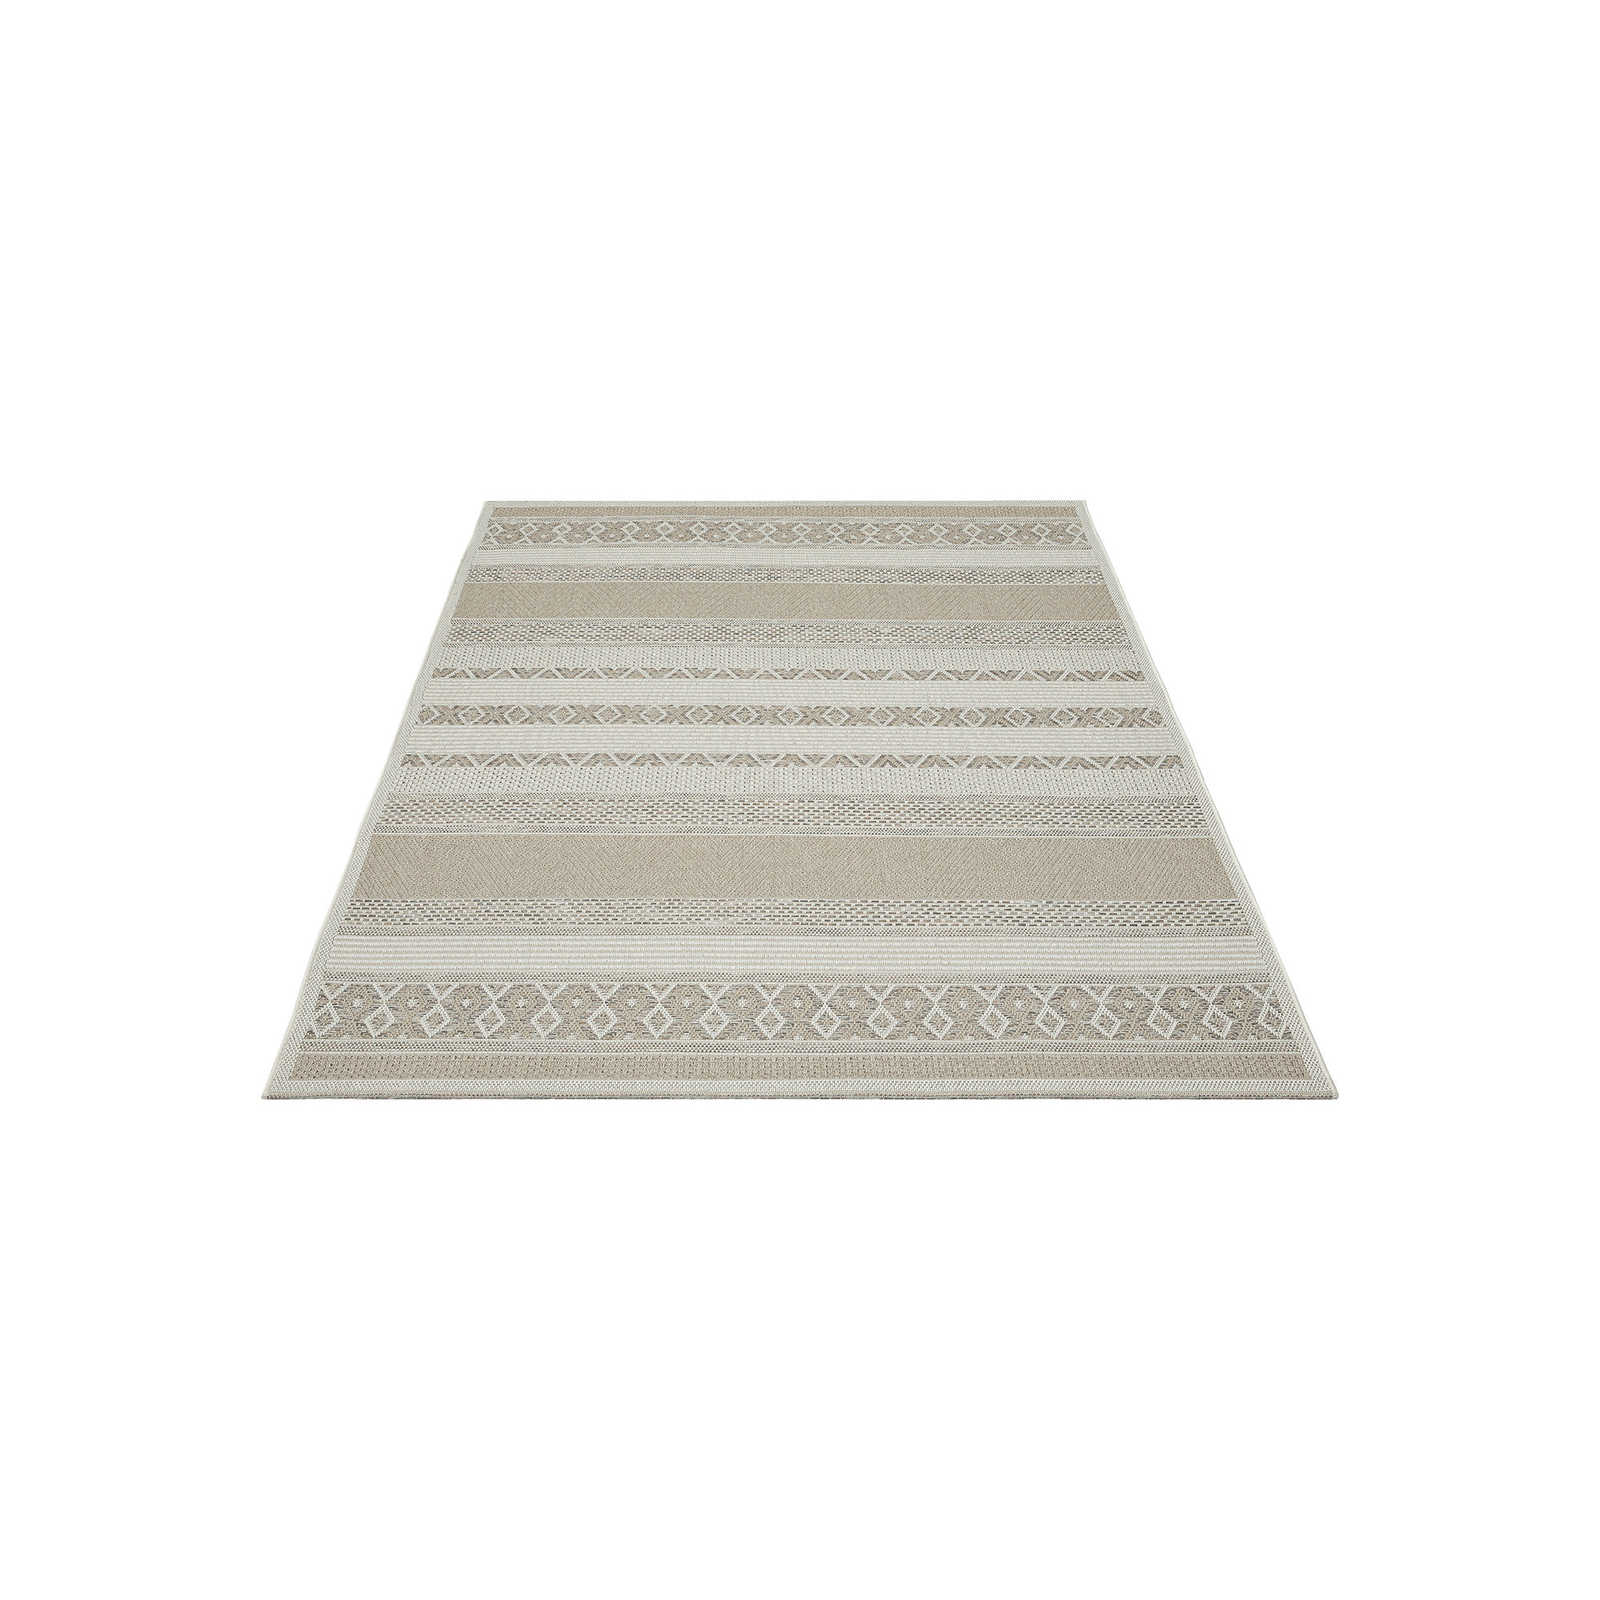 Tapis d'extérieur en tissu plat beige simple - 200 x 140 cm
